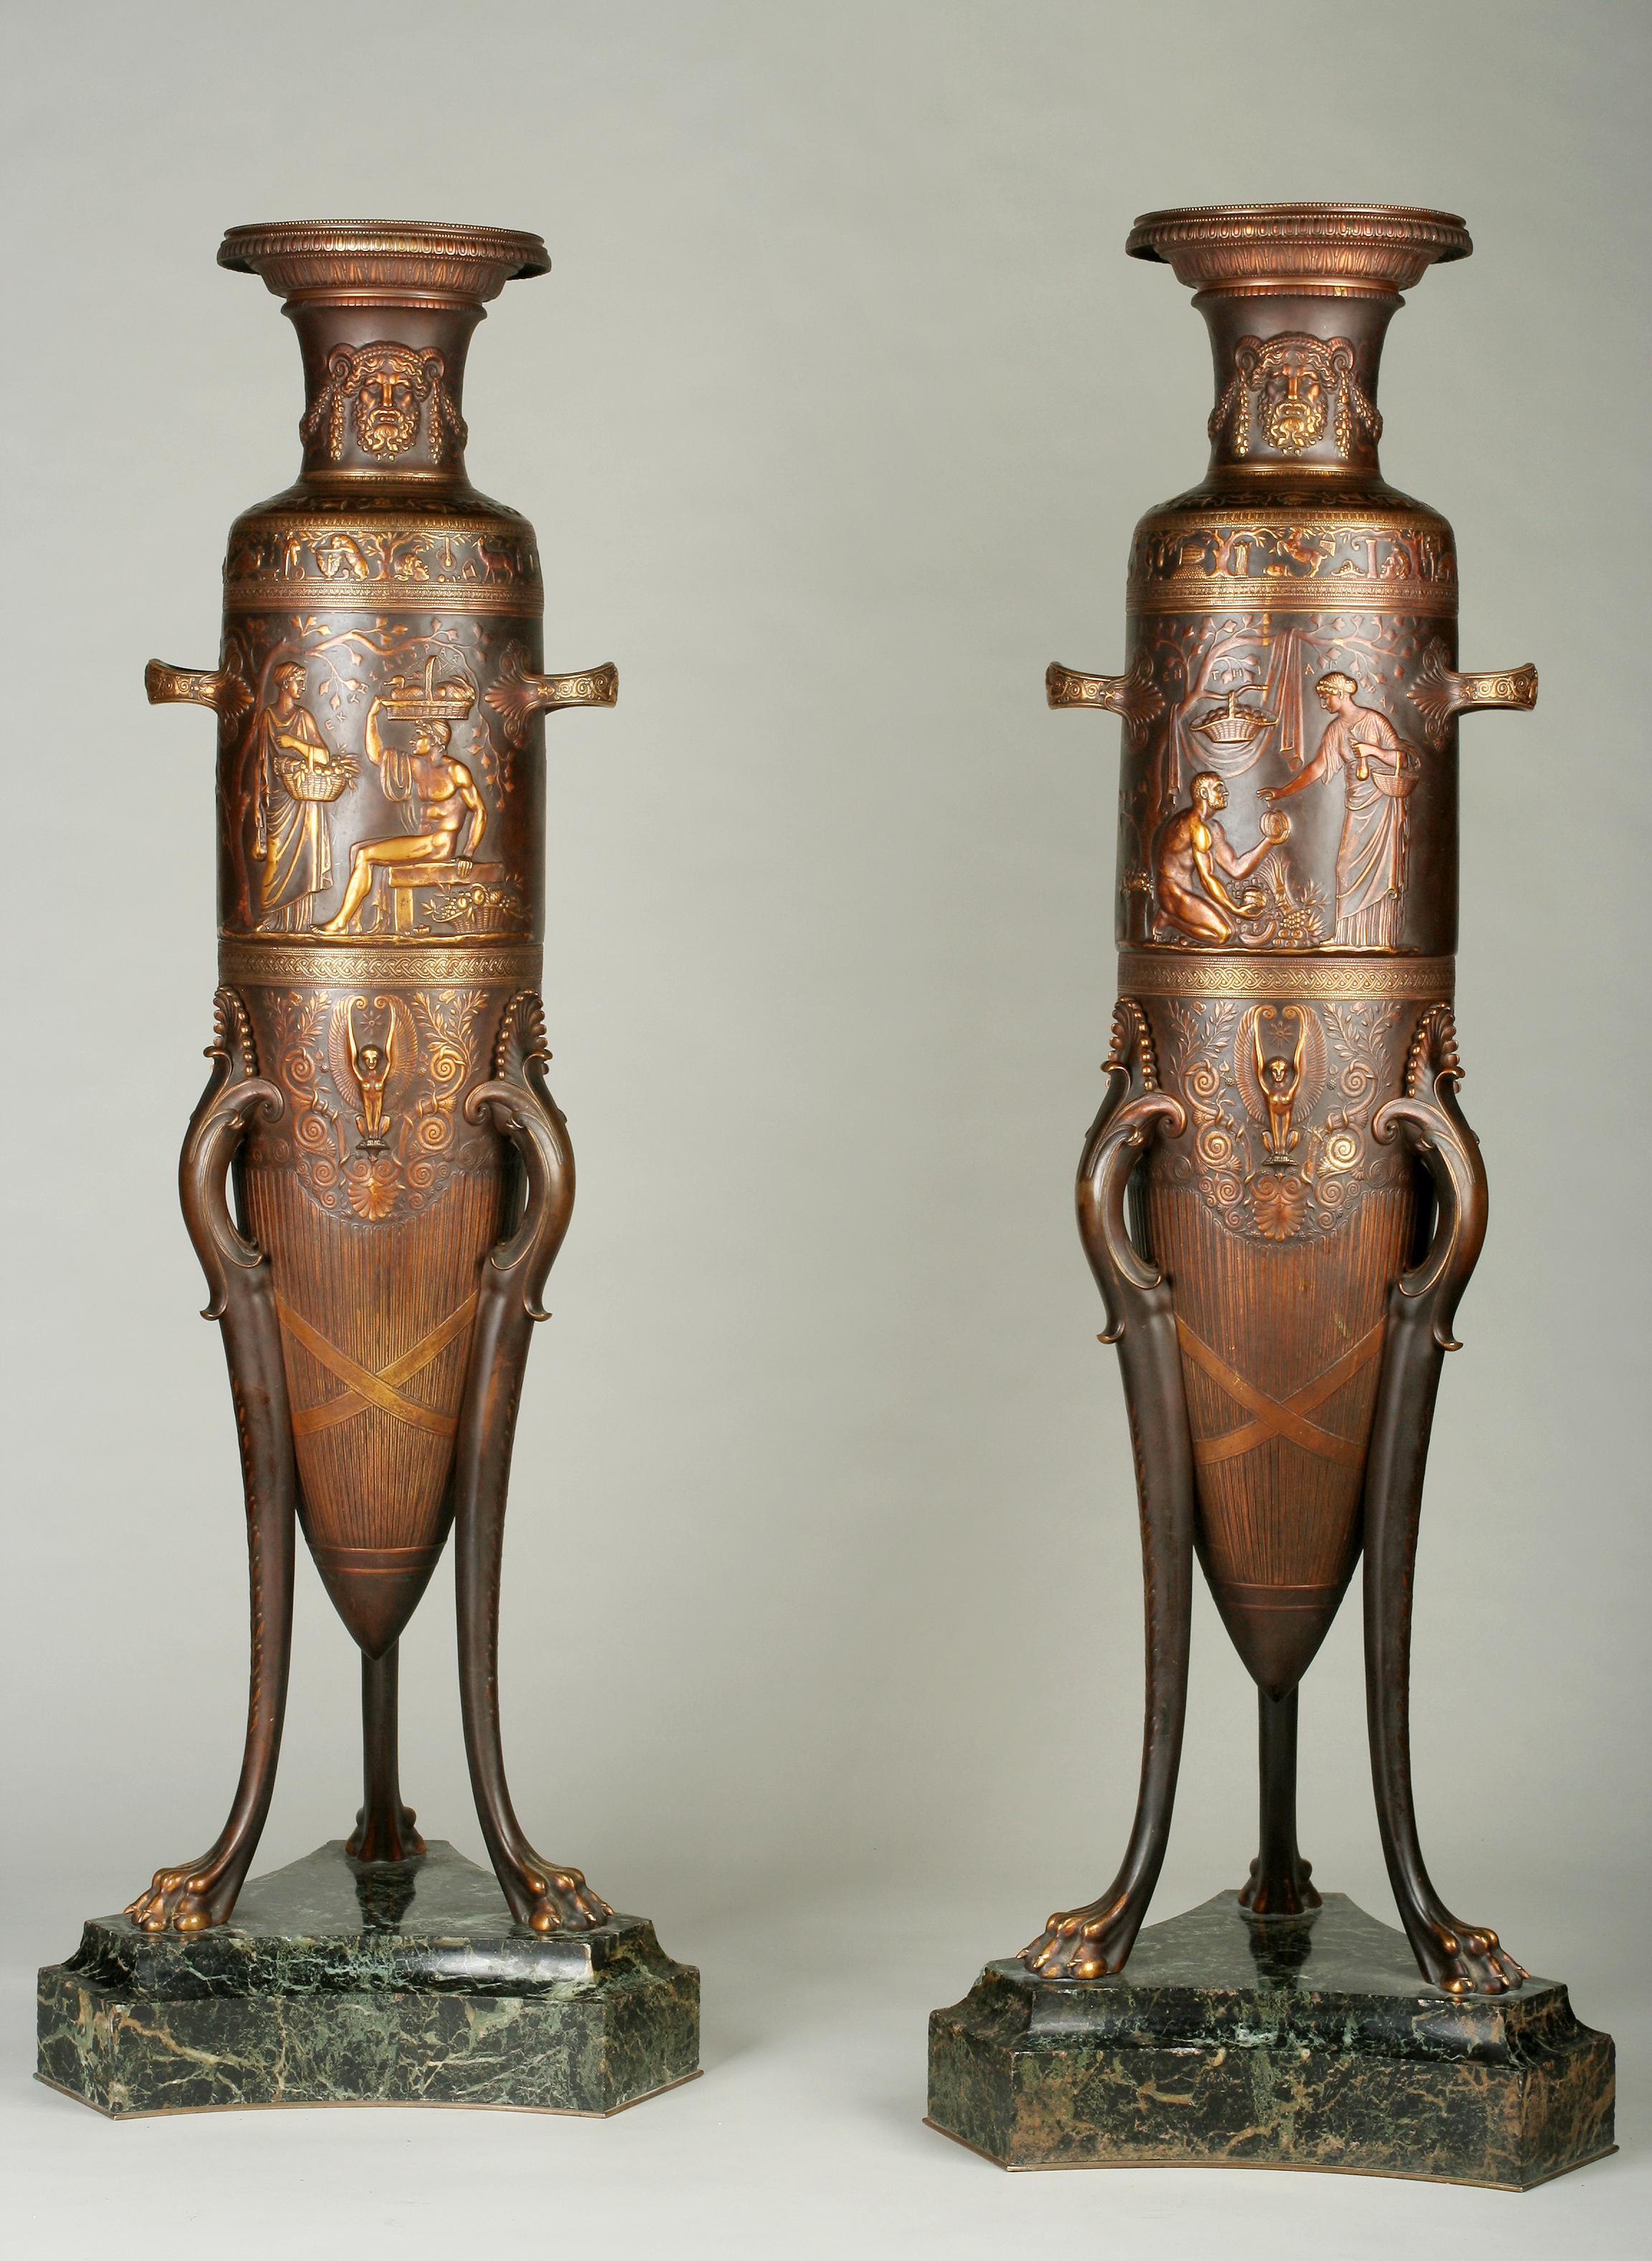 Das Modell dieser etruskischen Amphore wurde auf der Pariser Weltausstellung 1878 ausgestellt.

Jeweils mit tailliertem Hals, auf dem bärtige Satyrmasken stehen, die Blätter und Früchte tragen, der sich verjüngende Körper mit einem oberen Band,